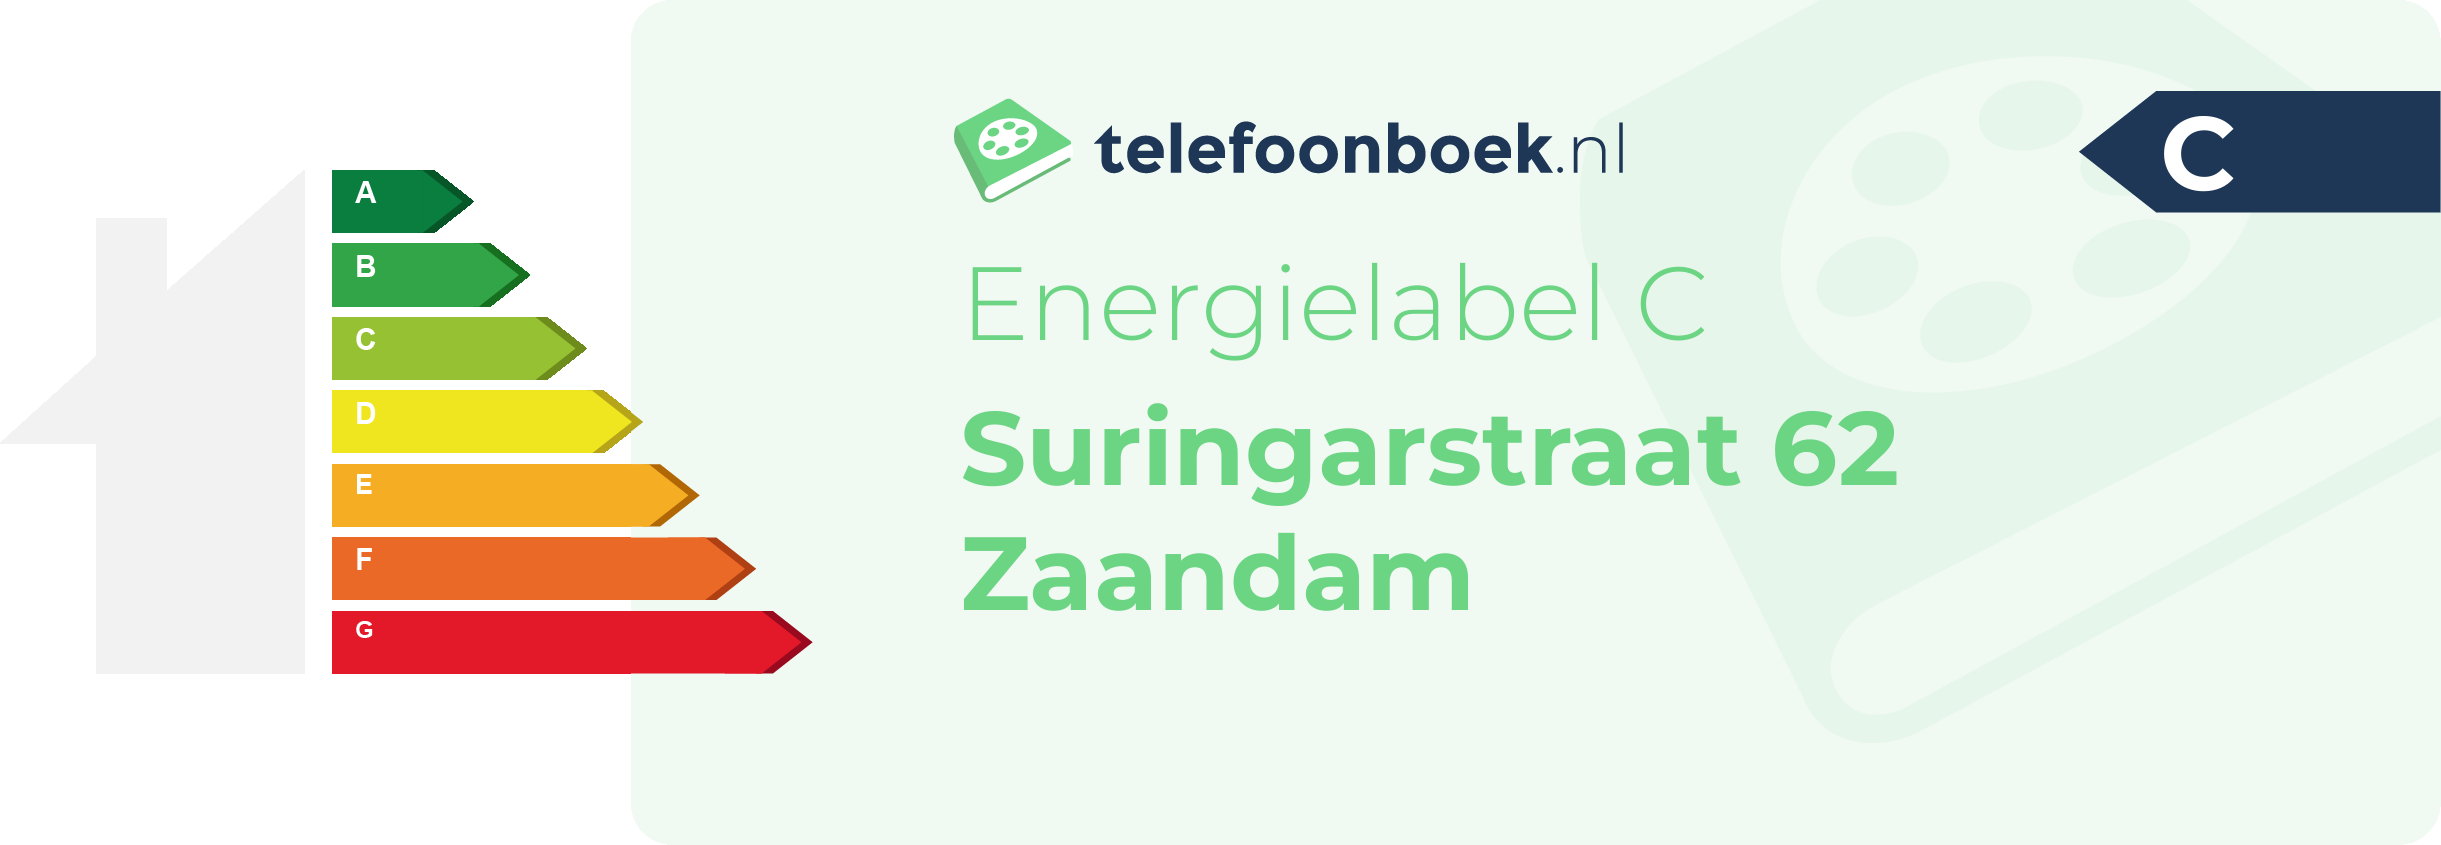 Energielabel Suringarstraat 62 Zaandam